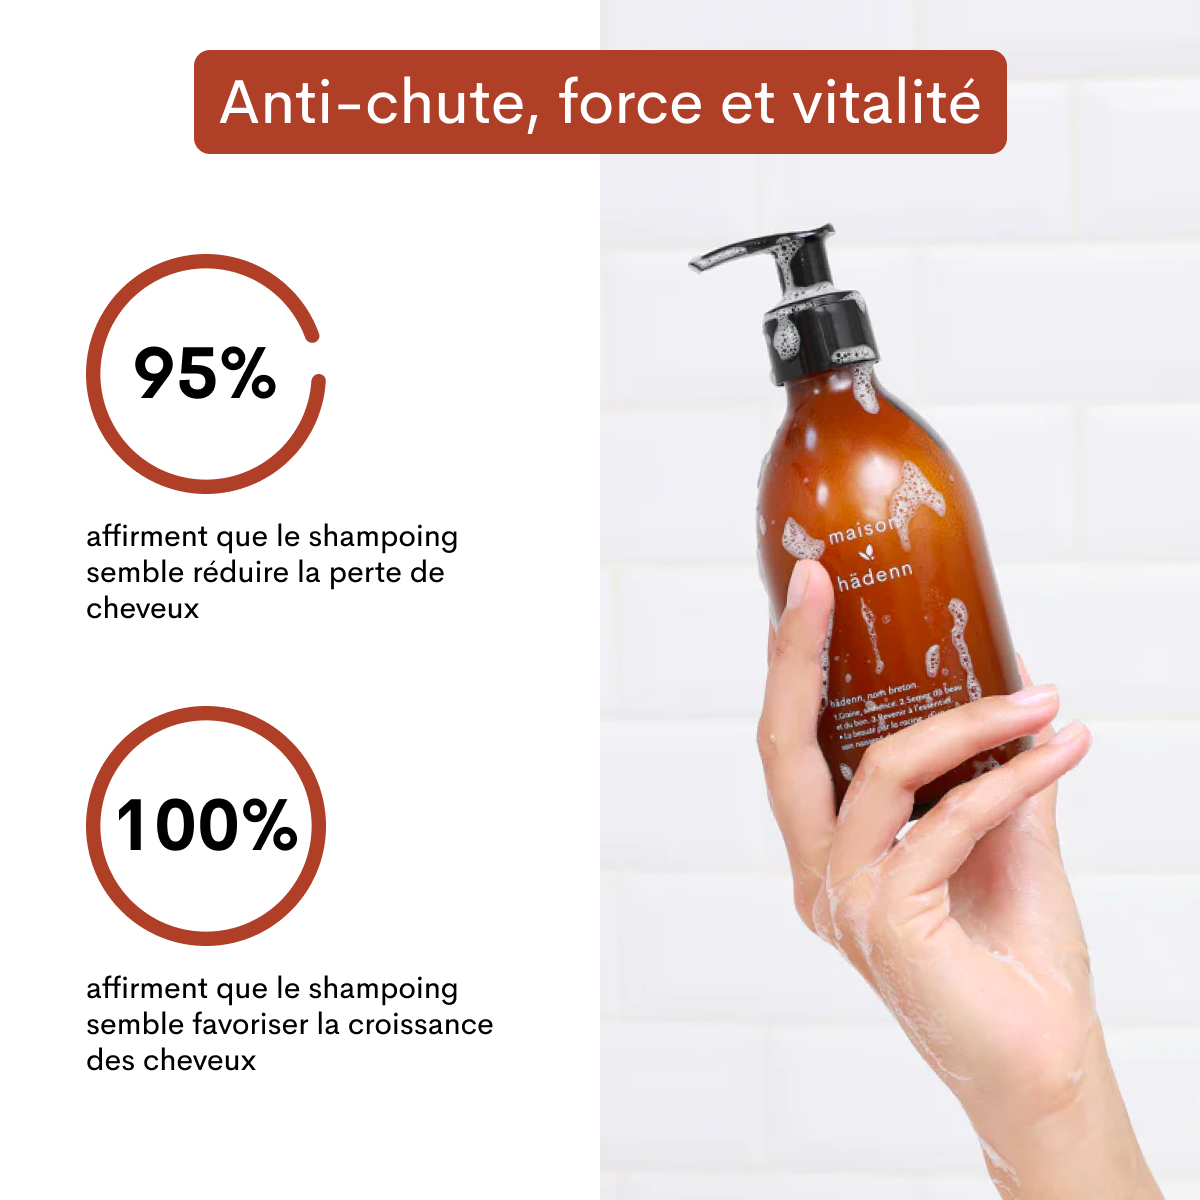 Shampoing fortifiant en poudre • Anti-chute, force et vitalité-maison hädenn  image-6
